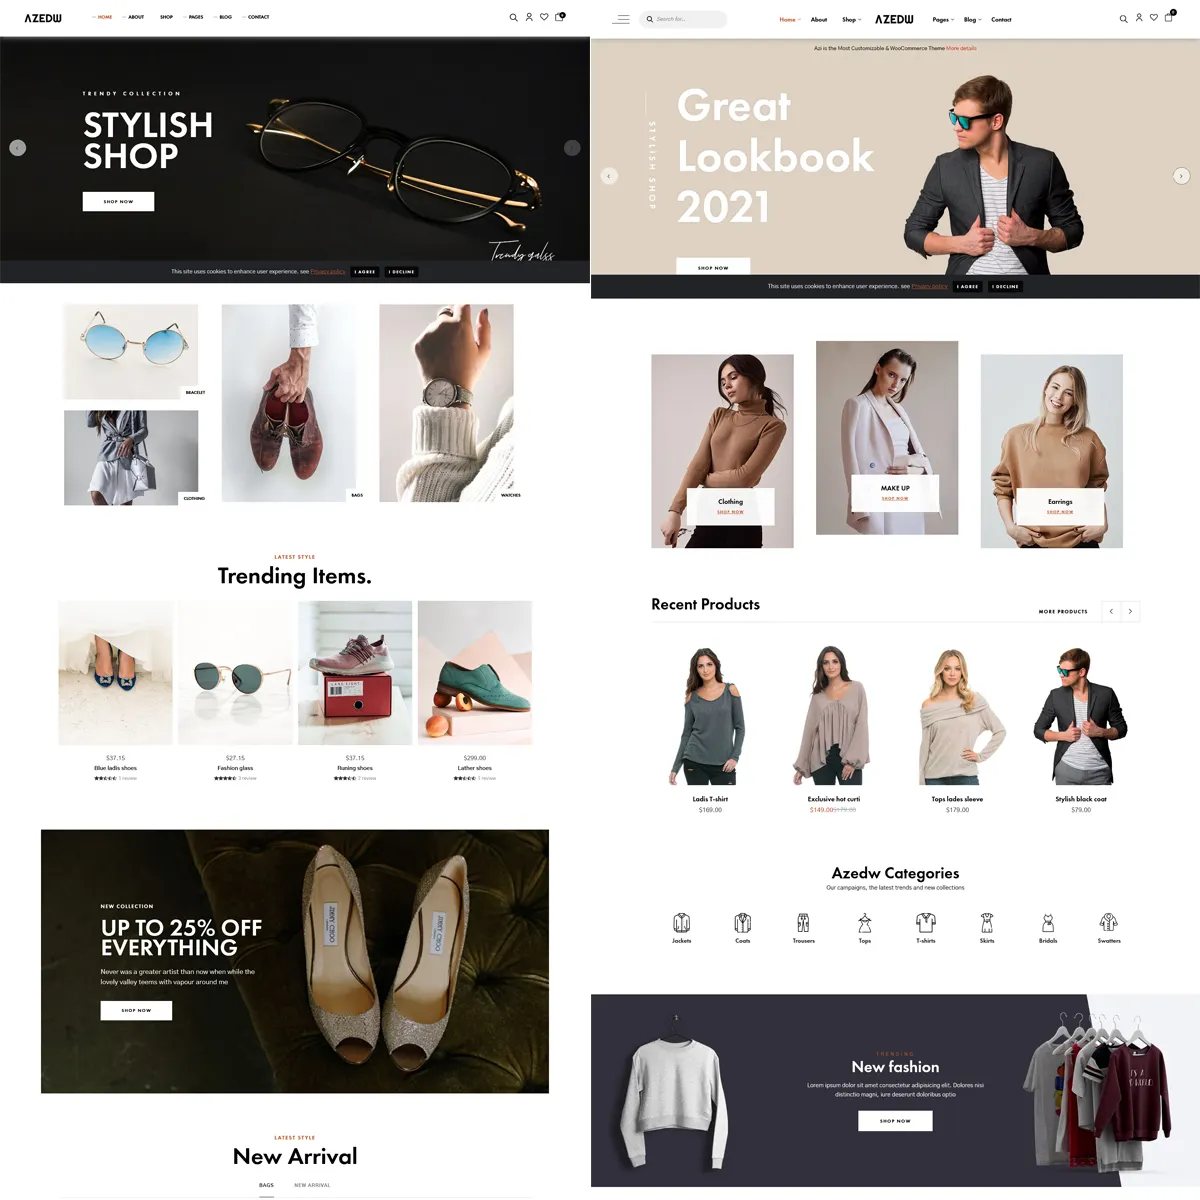 Shopify ई-कॉमर्स वेबसाइट डिजाइन और ई-कॉमर्स वेबसाइट डिजाइन | ऑनलाइन B2B विकास